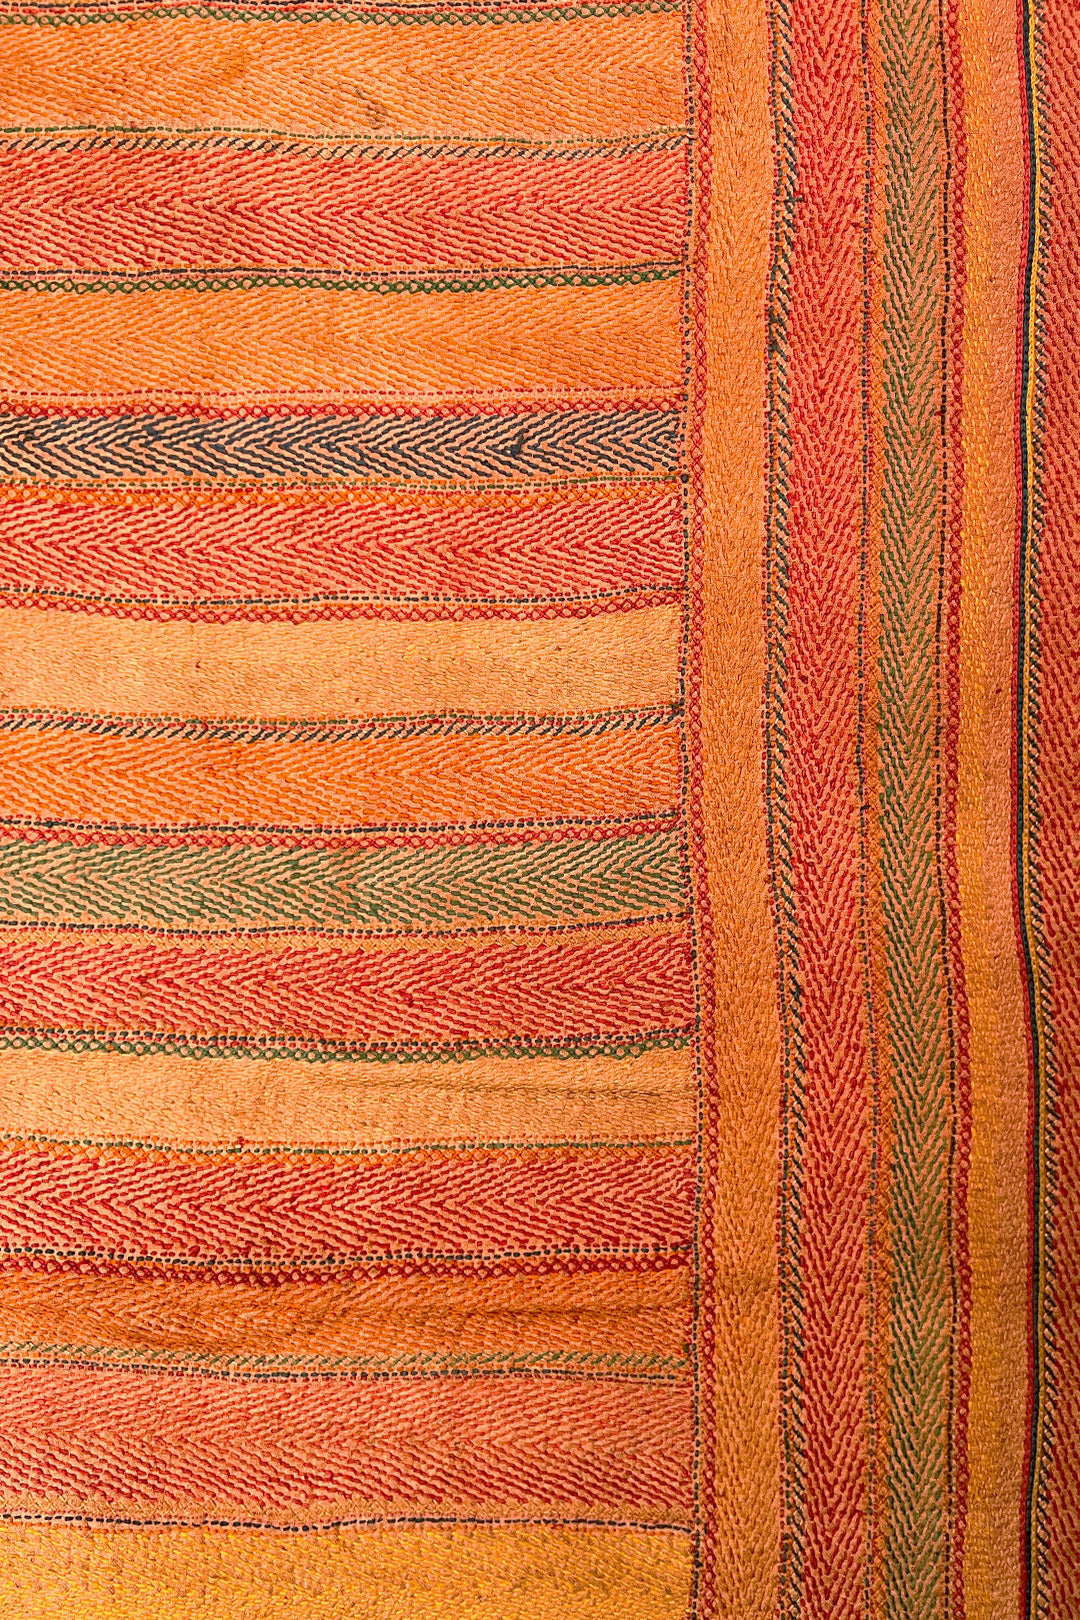 Banjara Kantha Blanket